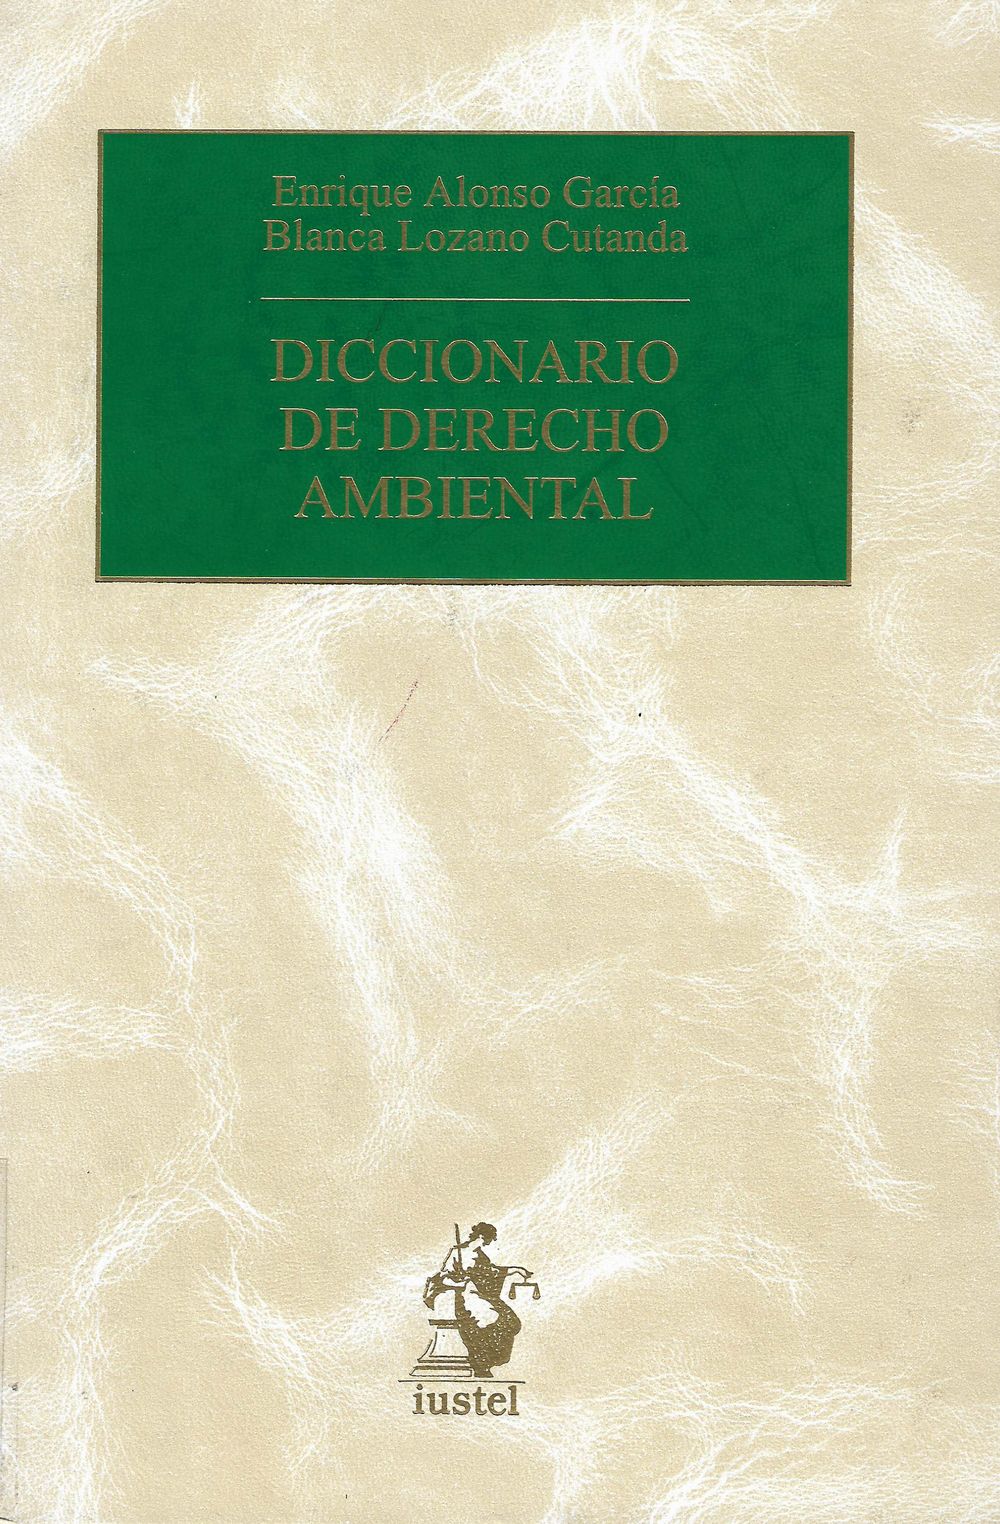 Imagen de portada del libro Diccionario de derecho ambiental